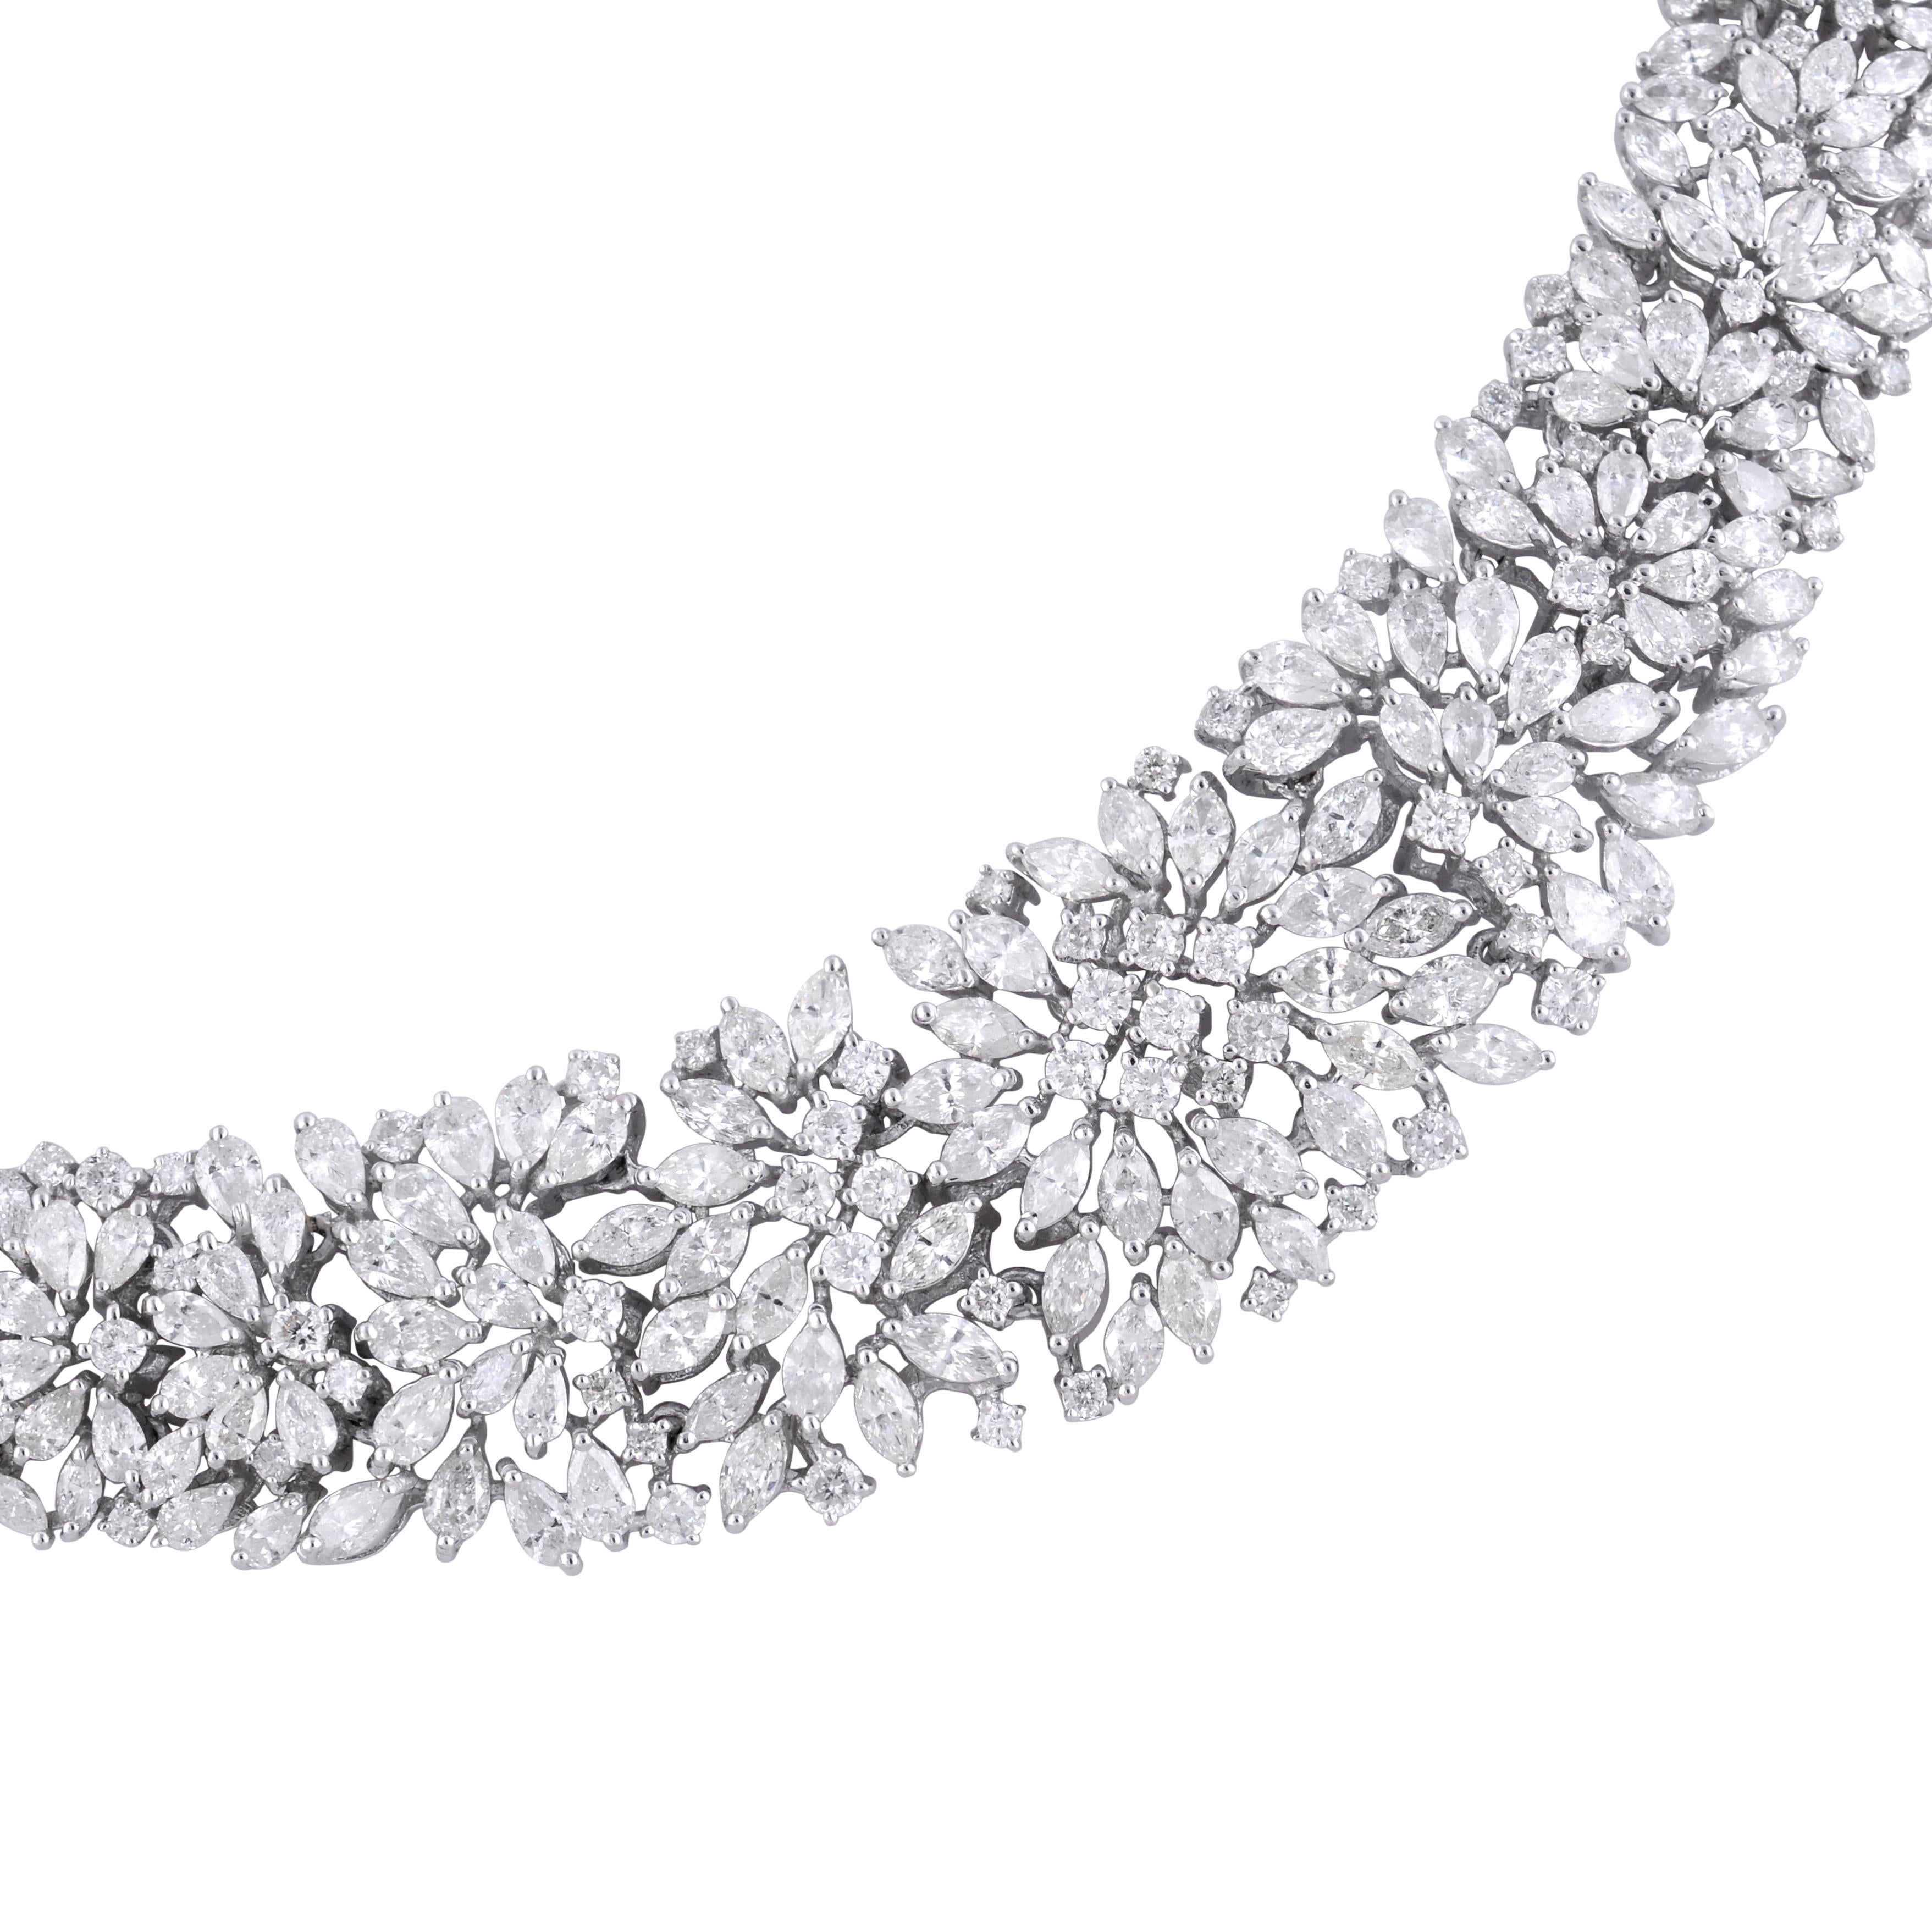 Die Halskette legt sich anmutig um den Hals und bietet einen atemberaubenden Anblick mit schimmernden Diamanten. Die verstellbare Kettenlänge sorgt für Vielseitigkeit, einen perfekten Sitz und die Möglichkeit, die Halskette an Ihr bevorzugtes